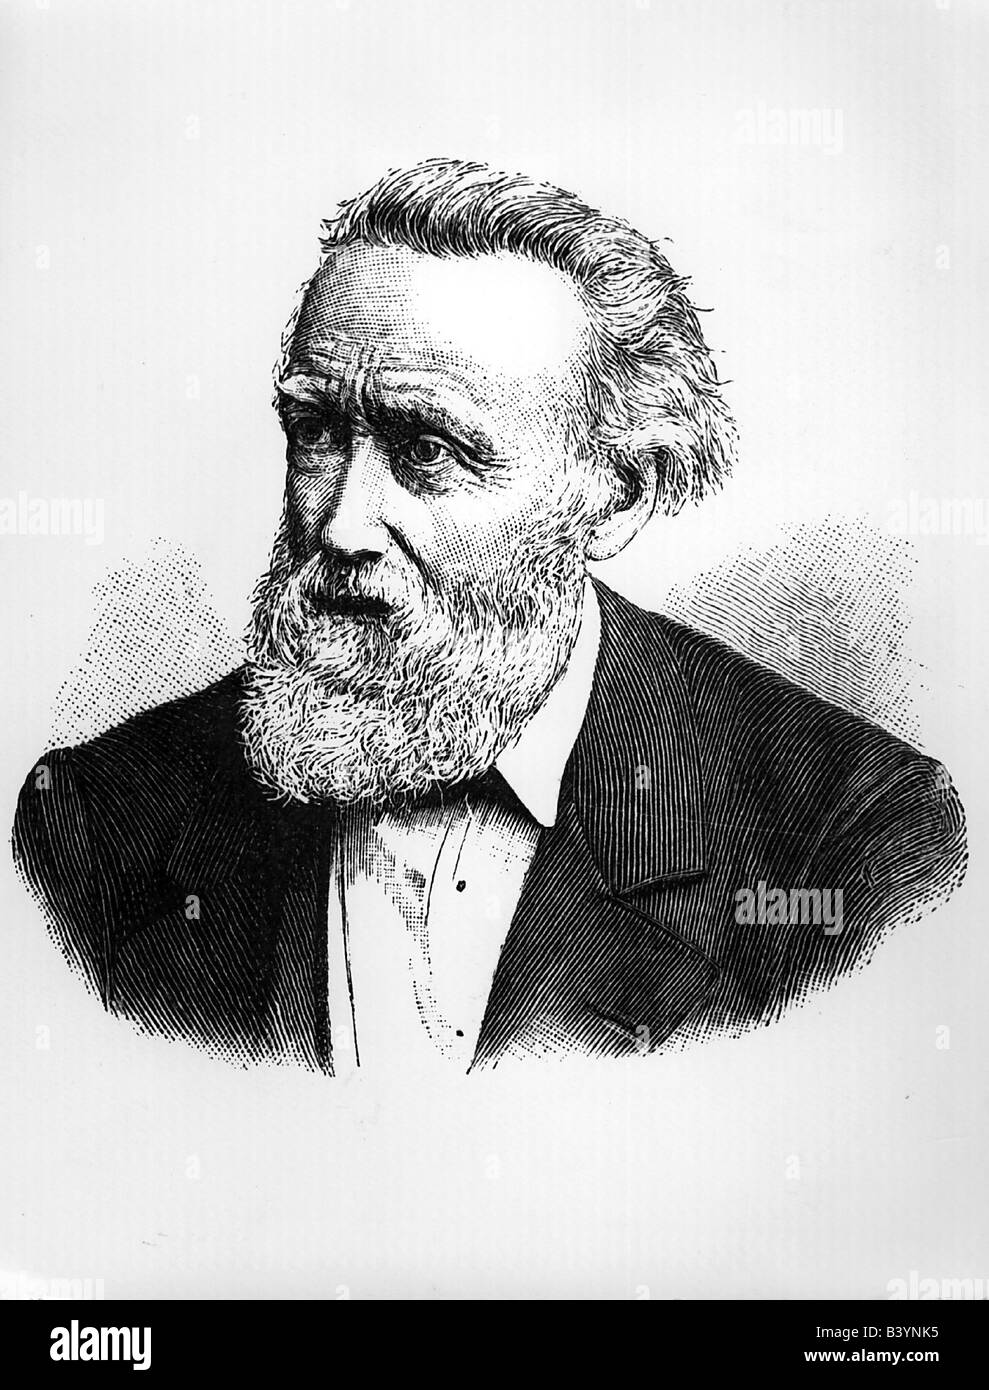 Storm, Theodor, 14.9.1817 - 4.7.1888, autore/scrittore tedesco, ritratto, incisione, circa 1885, Foto Stock